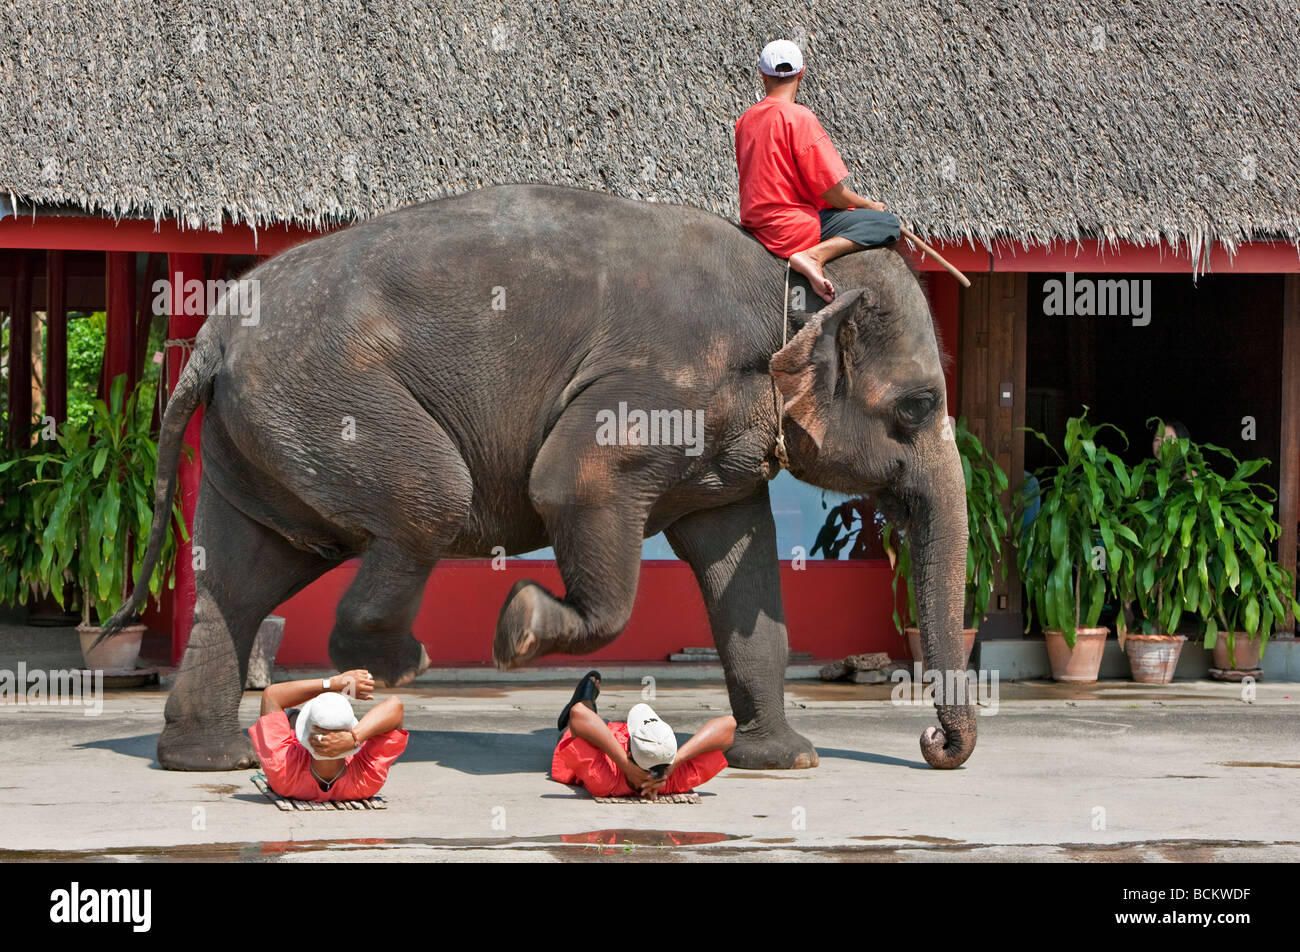 La Thaïlande. Un affichage à l'éléphant Rose Garden un complexe touristique situé dans 75 acres de jardins magnifiques Banque D'Images